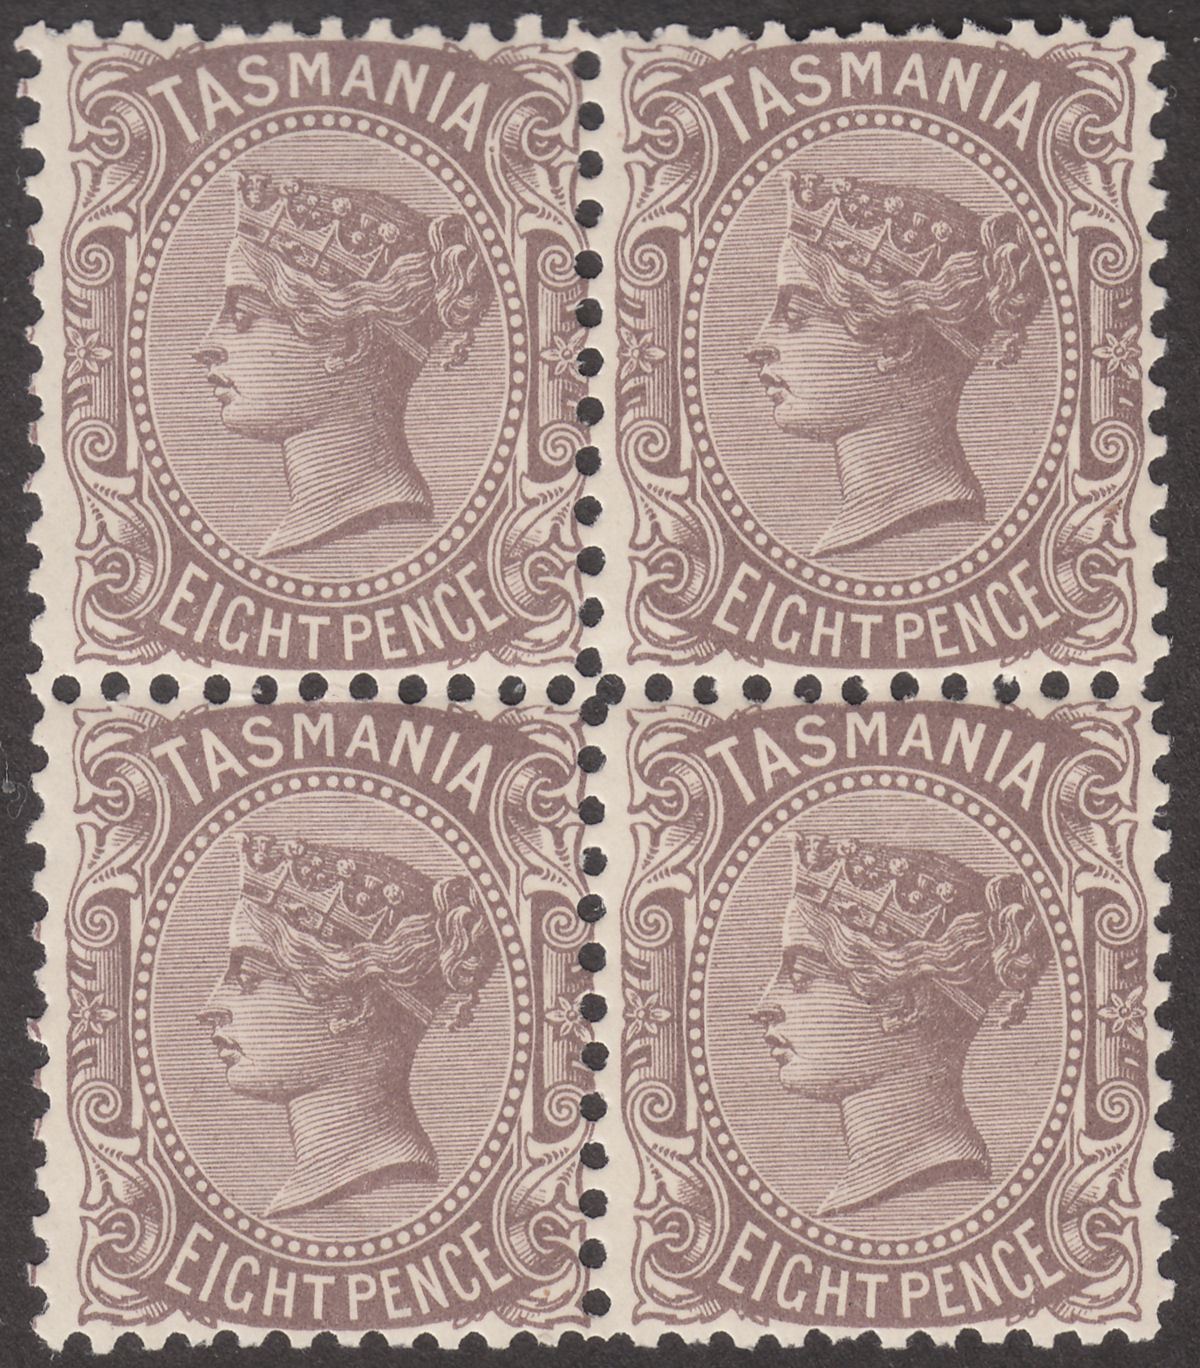 Tasmania 1907 QV 8d Purple-Brown perf 11 Block of 4 Mint SG255a cat £88